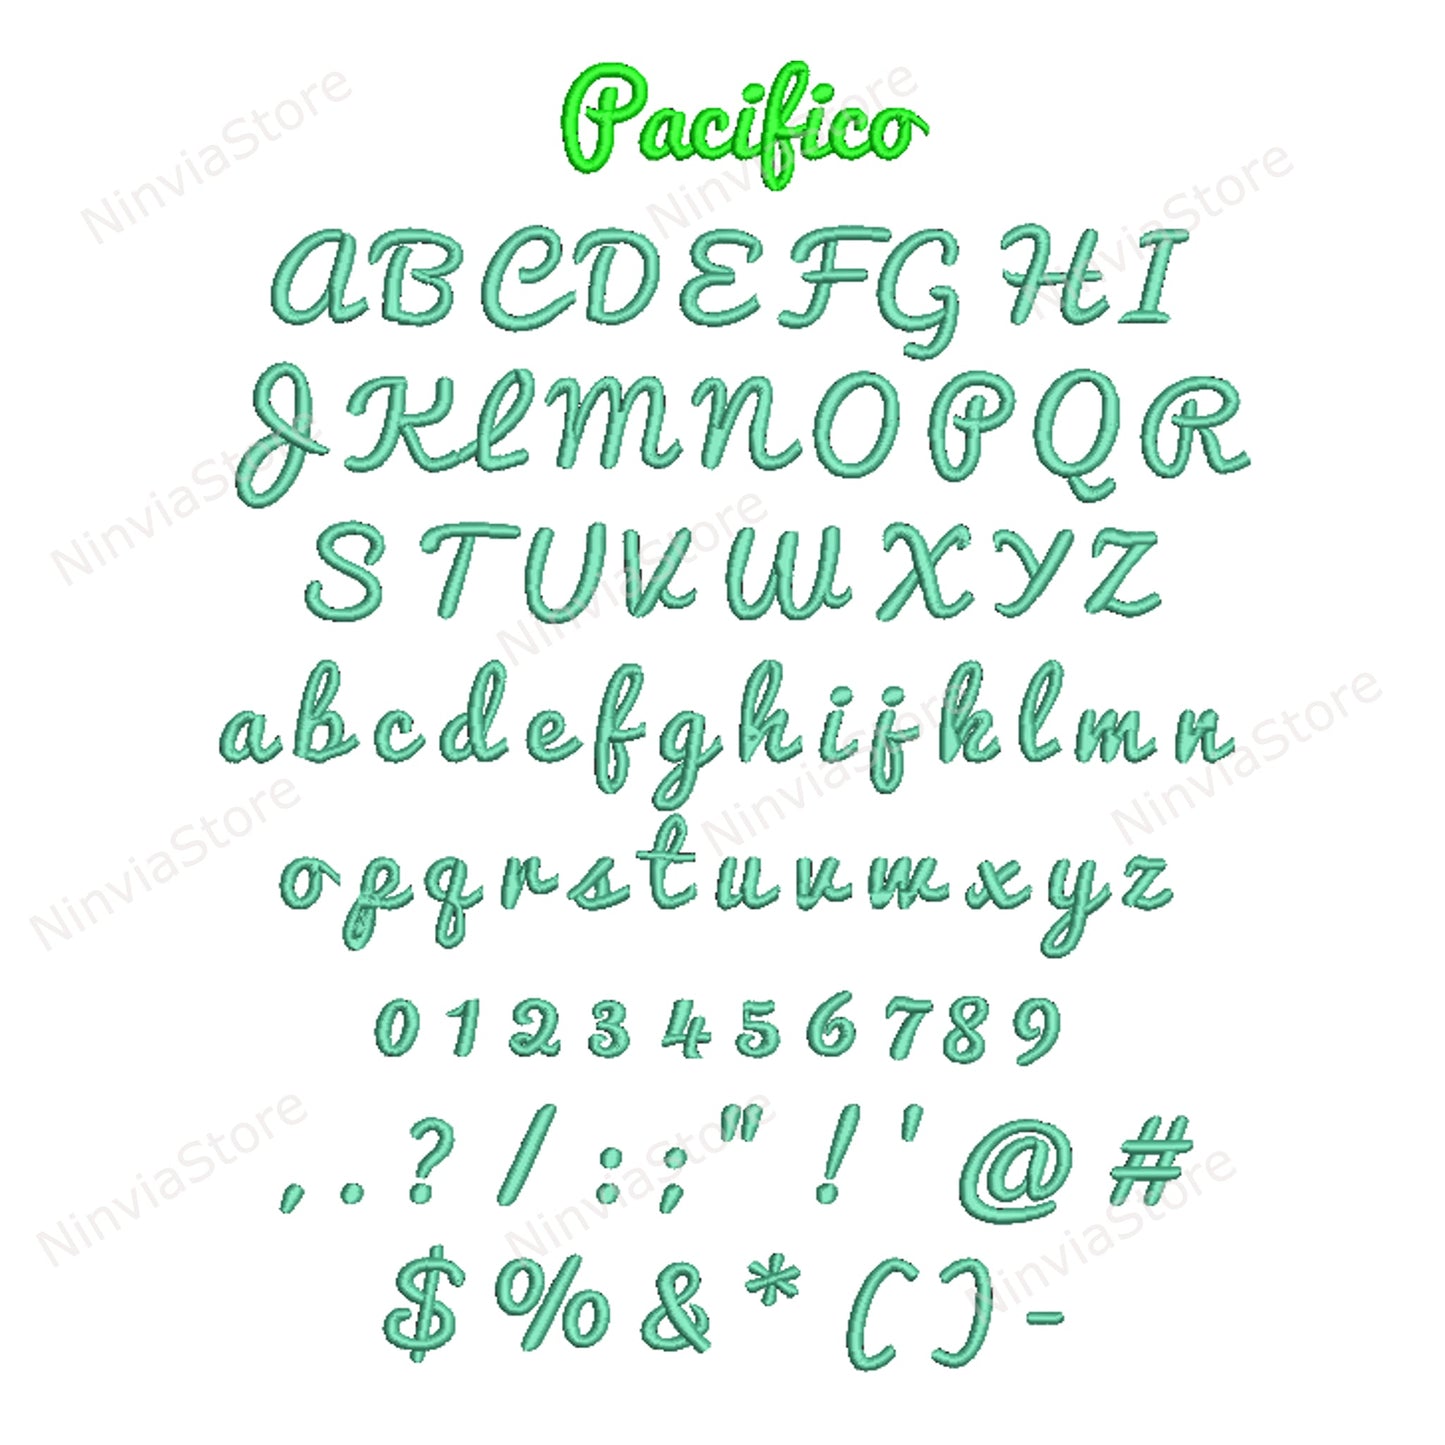 10 VP3-Stickschriftarten-Paket, Maschinenstickschrift VP3, Alphabet-Stickdesign, kursive VP3-Schriftart für Stickereien, Kalligraphie-Monogramm-Stickschriftart VP3